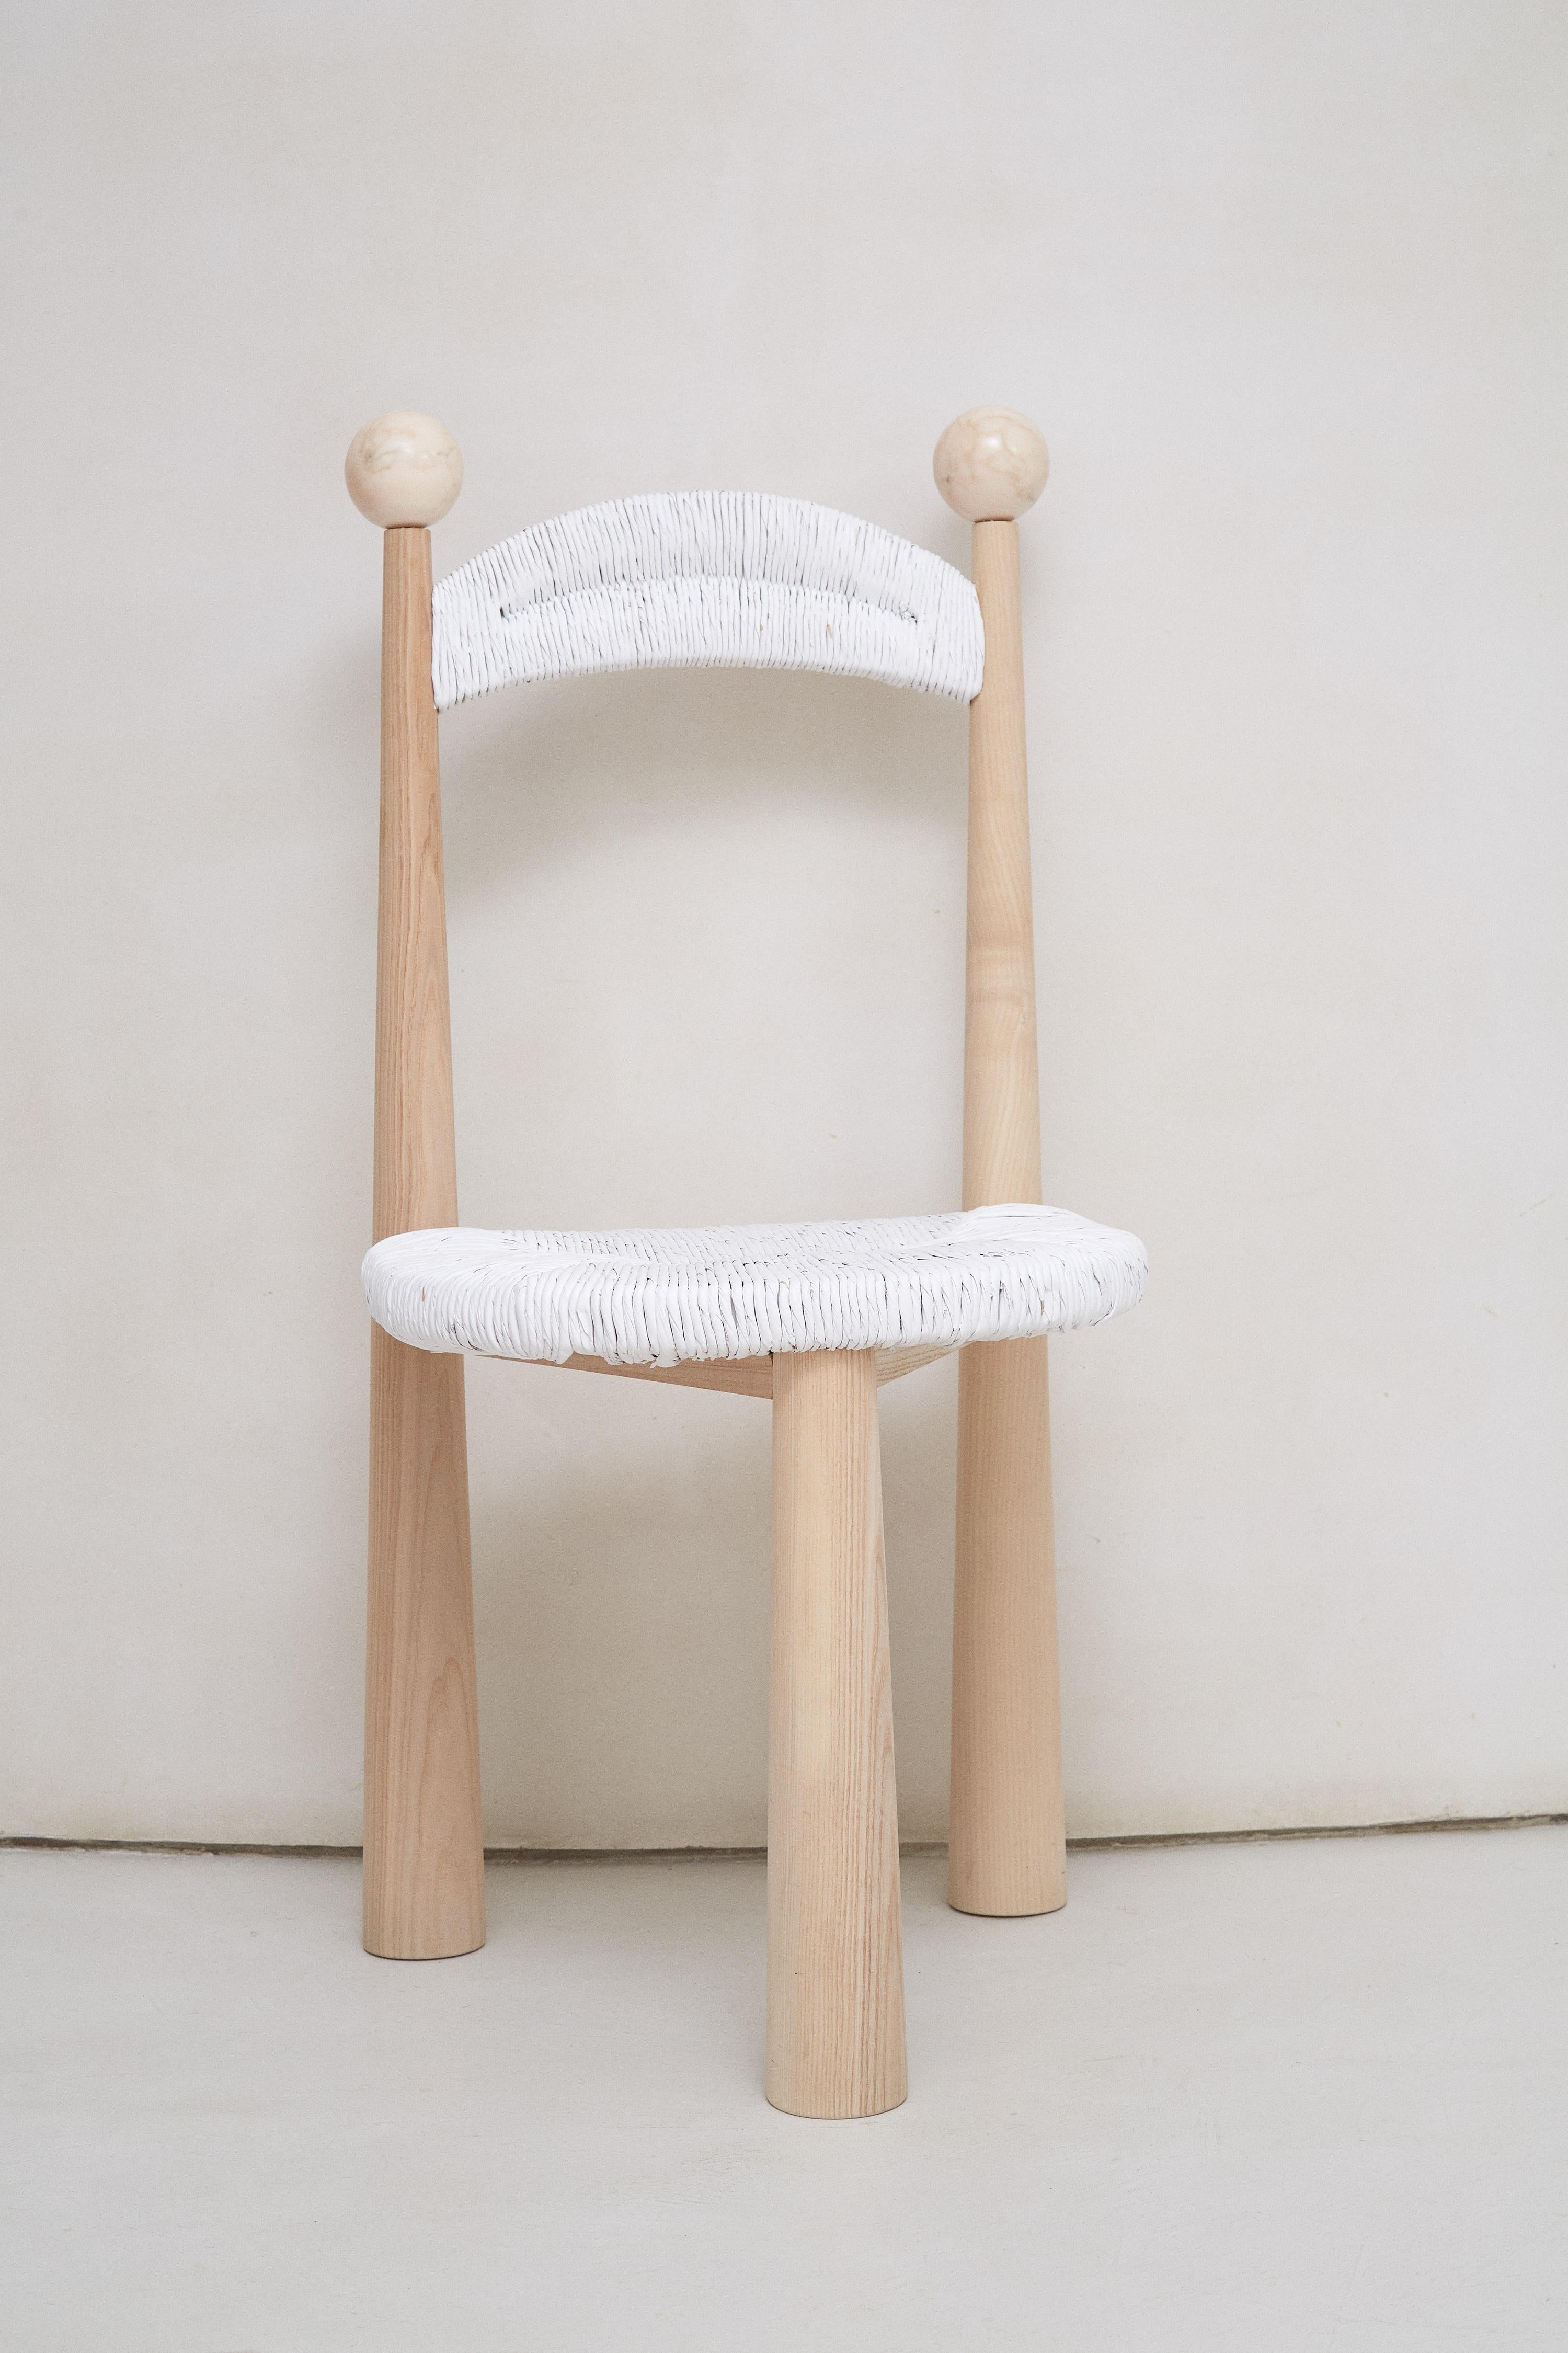 Satz von 2 Newcastle-Stühlen von Patricia Bustos de la Torre
Abmessungen: T 47 x B 48 x H 91 cm.
MATERIALIEN: Holz und Plüsch.

Newcastle Chair ist ein dreibeiniger Holzstuhl mit einer Sitzfläche aus Rattan, der jedes Esszimmer verwandelt. Dieses